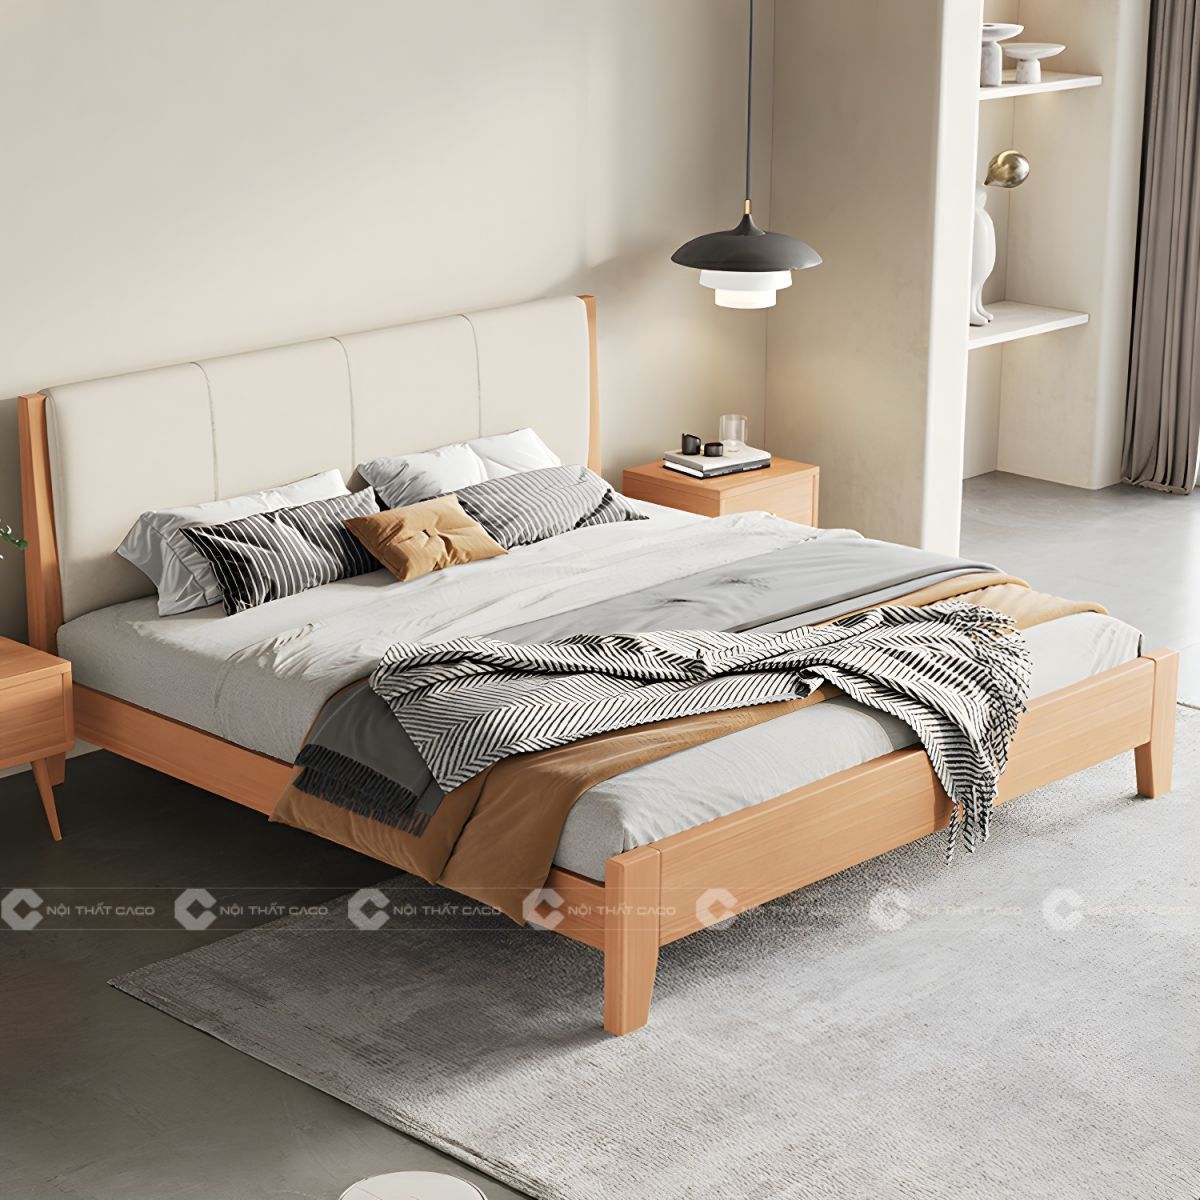 Giường ngủ gỗ tự nhiên vân gỗ hiện đại